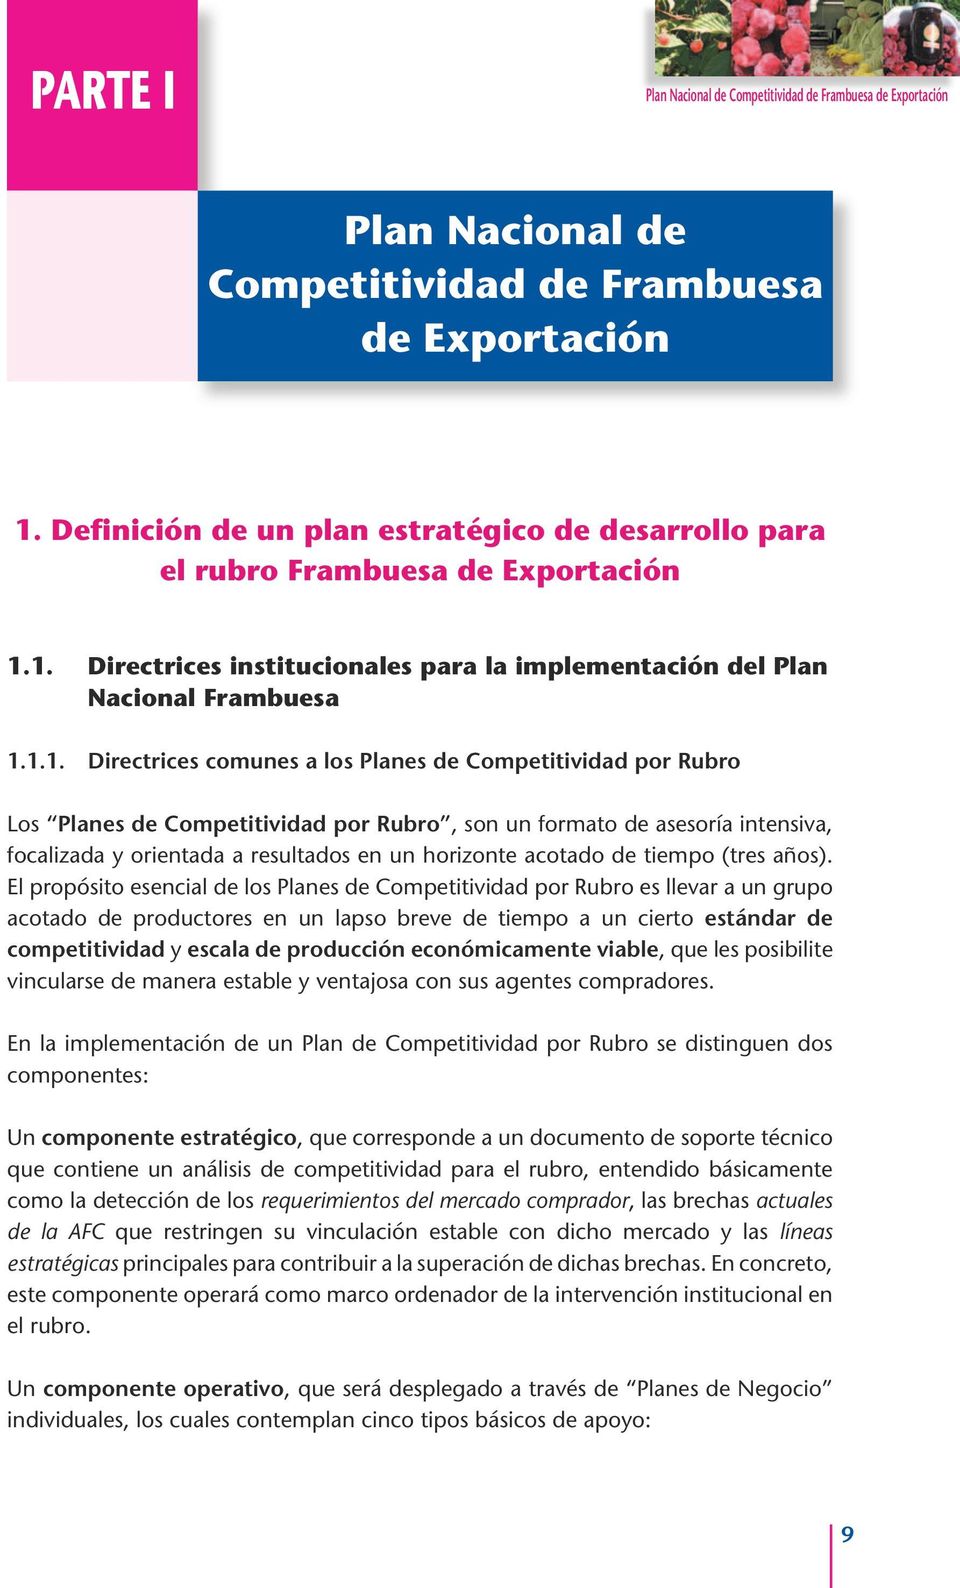 1. Directrices institucionales para la implementación del Plan Nacional Frambuesa 1.1.1. Directrices comunes a los Planes de Competitividad por Rubro Los Planes de Competitividad por Rubro, son un